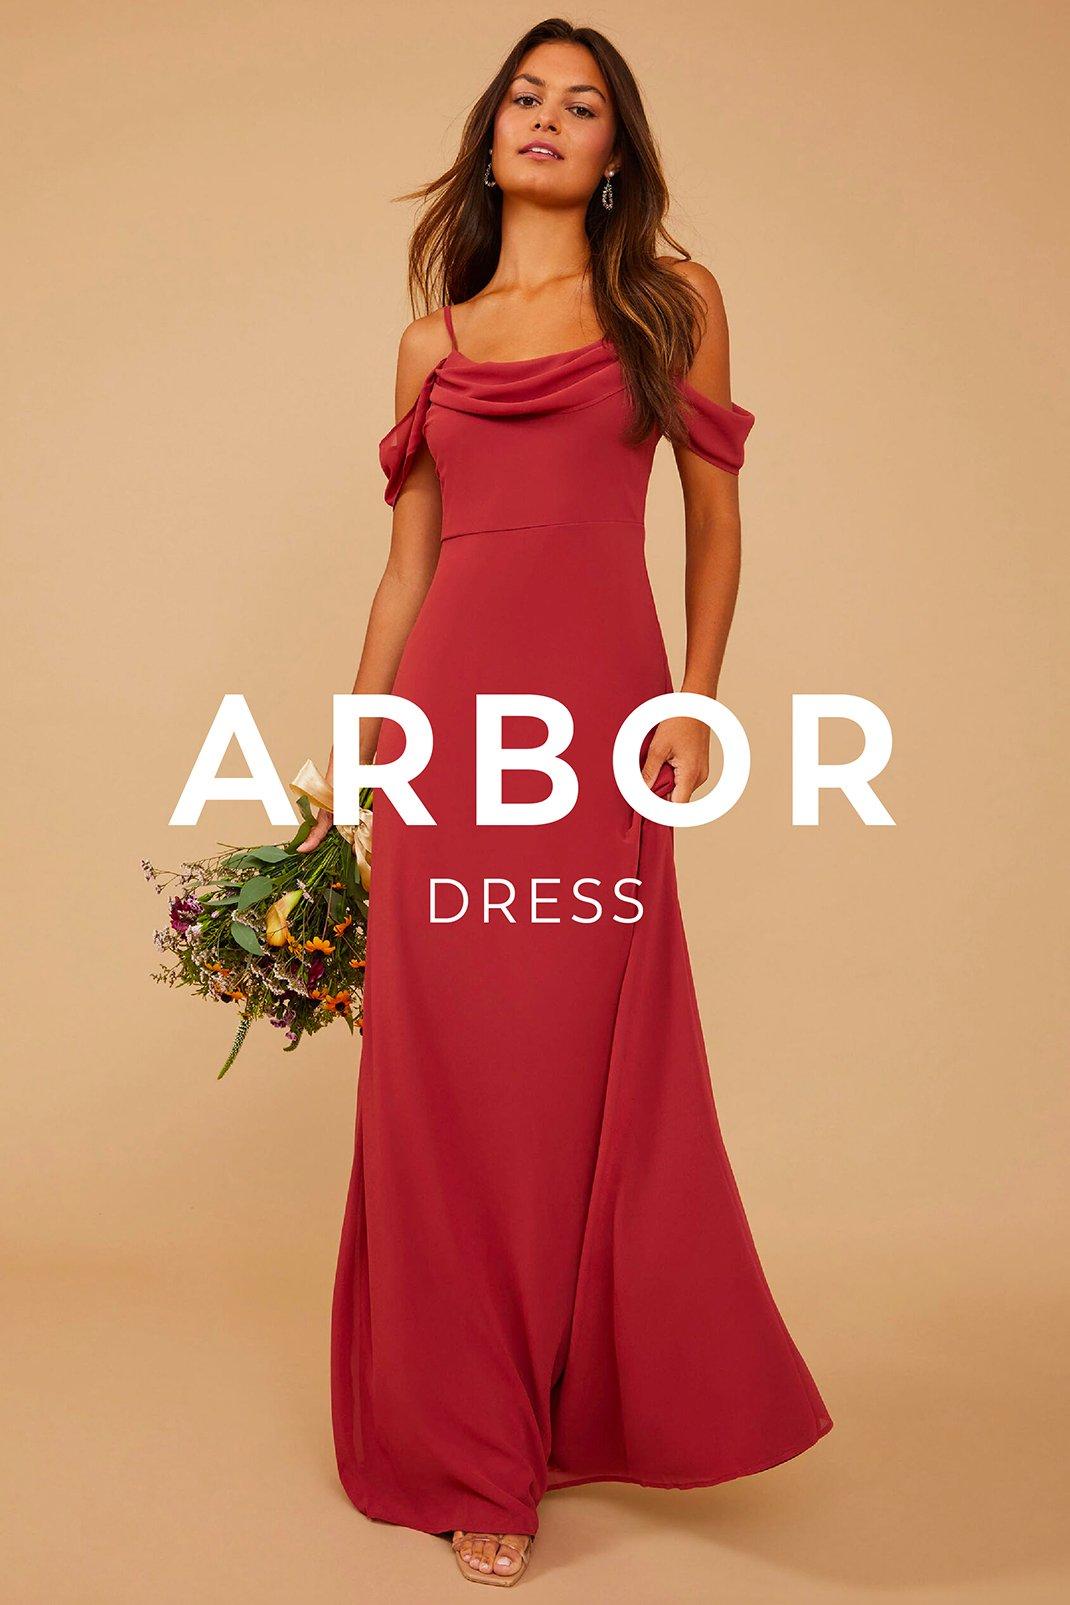 Vow'd Weddings Arbor Dress in Rust Red